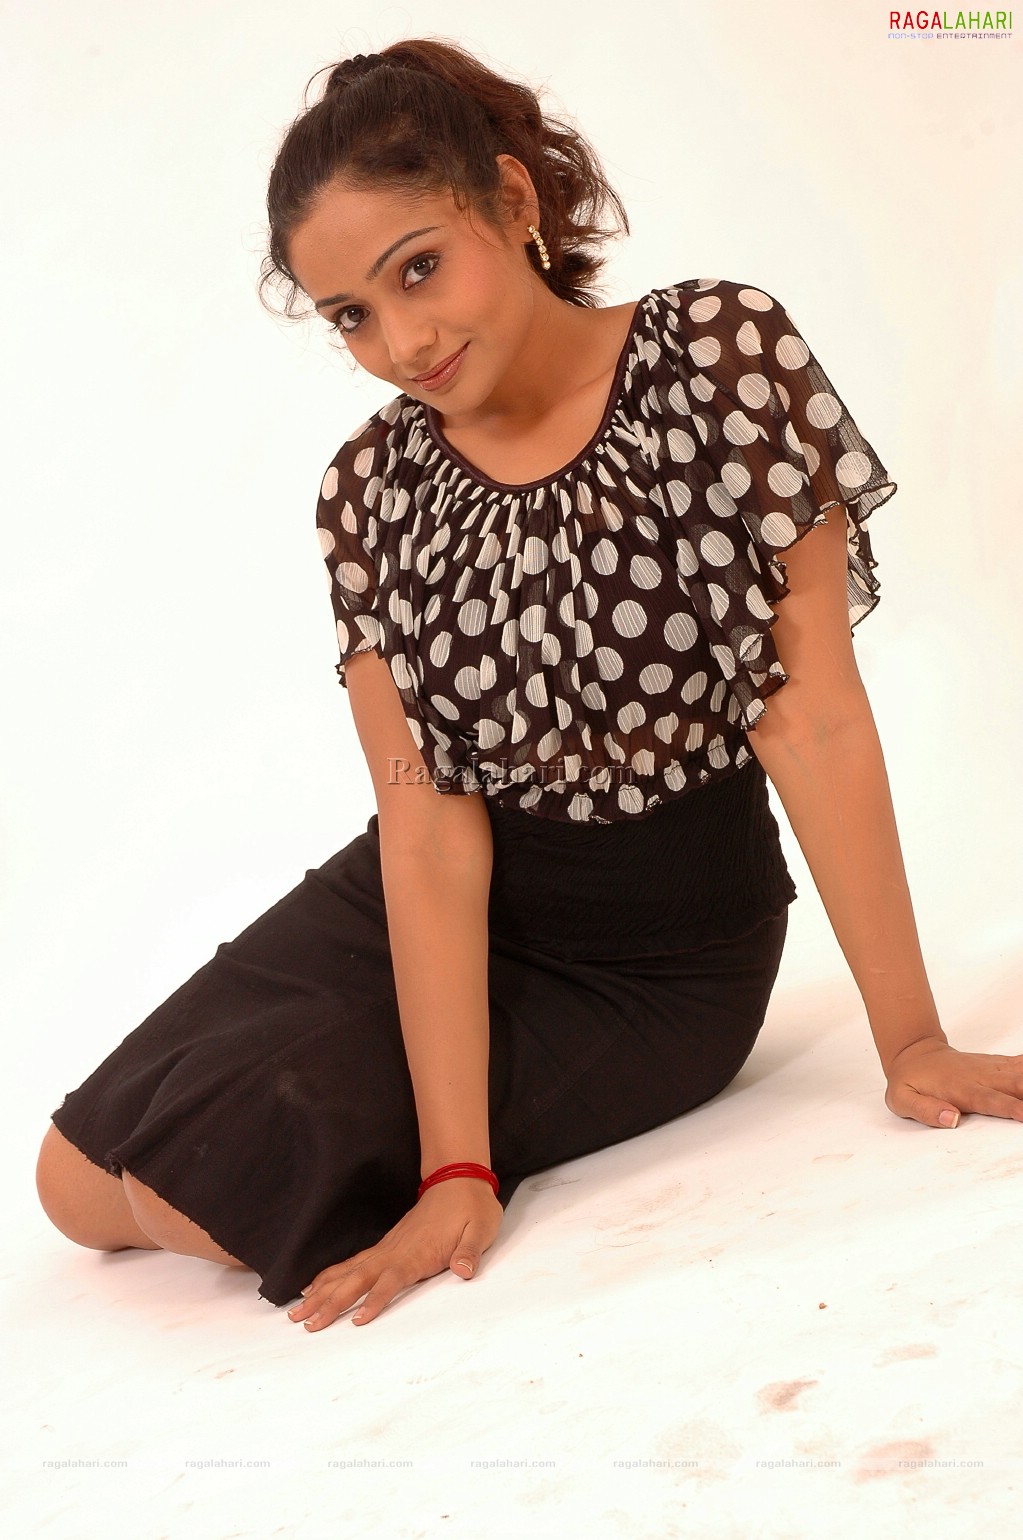 Meera Vasudevan